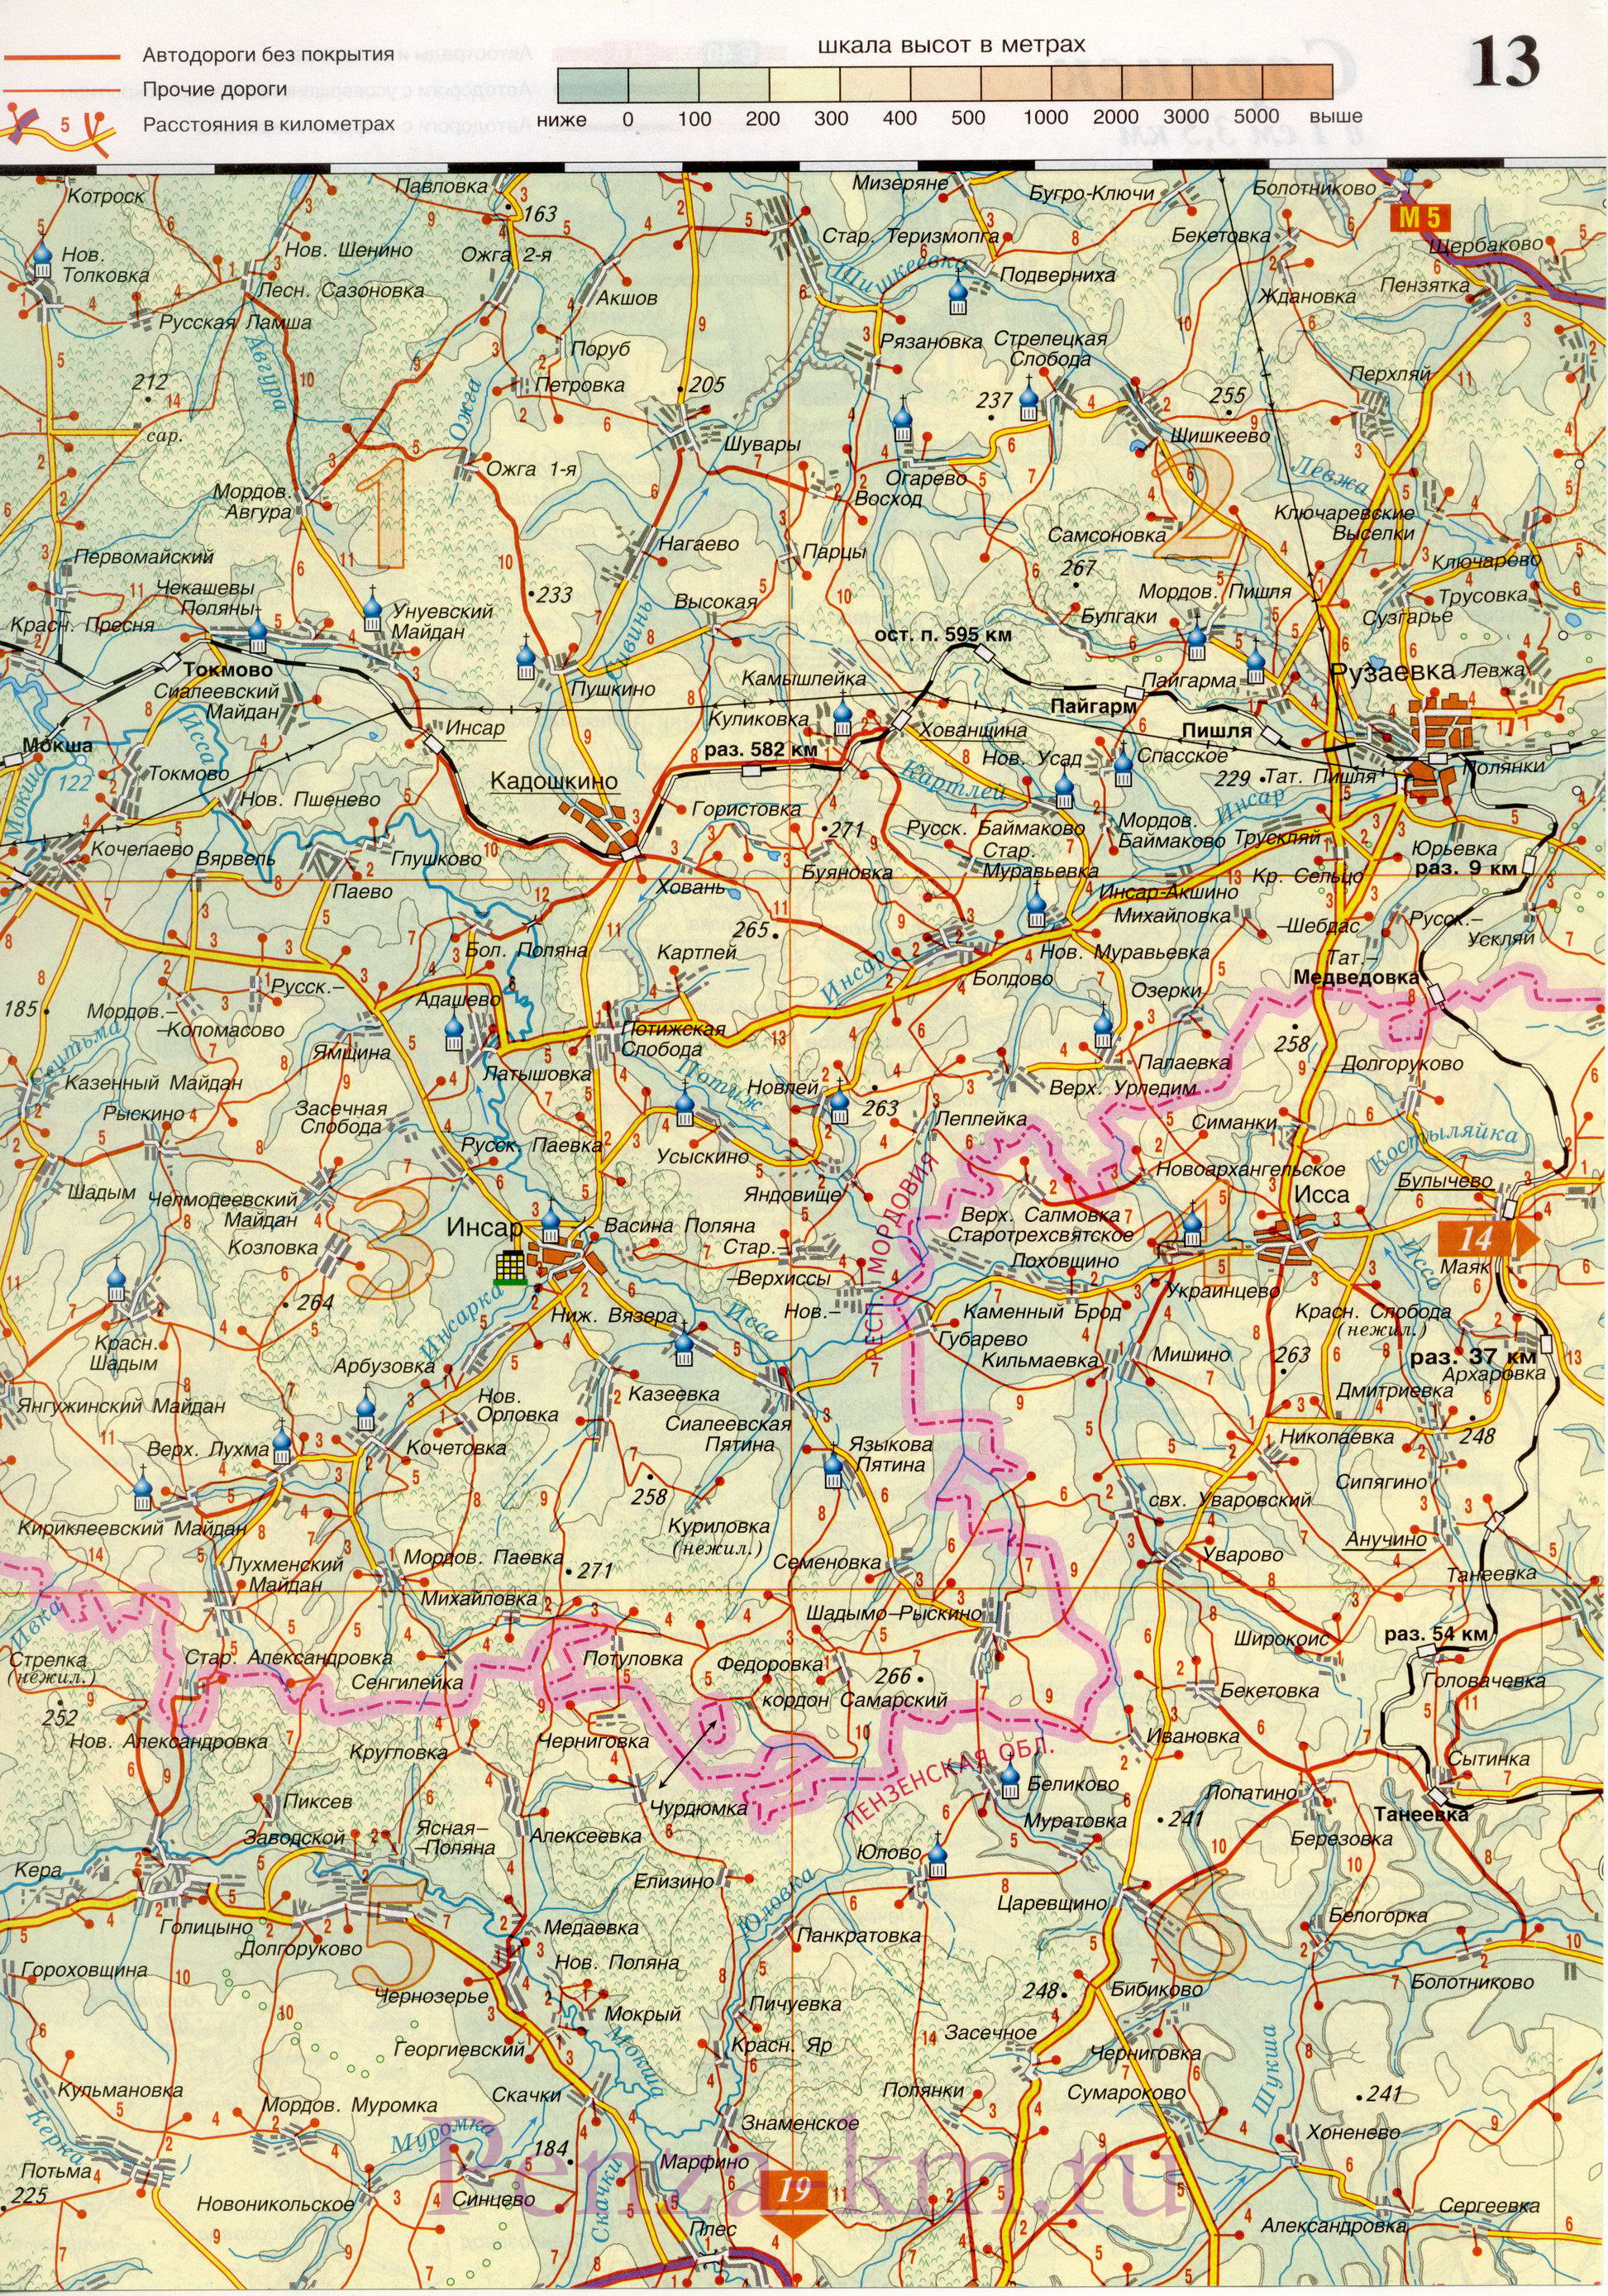 Нижний Ломов на карте России. Карта дорог города Нижний Ломов и окрестностей, B0 - 